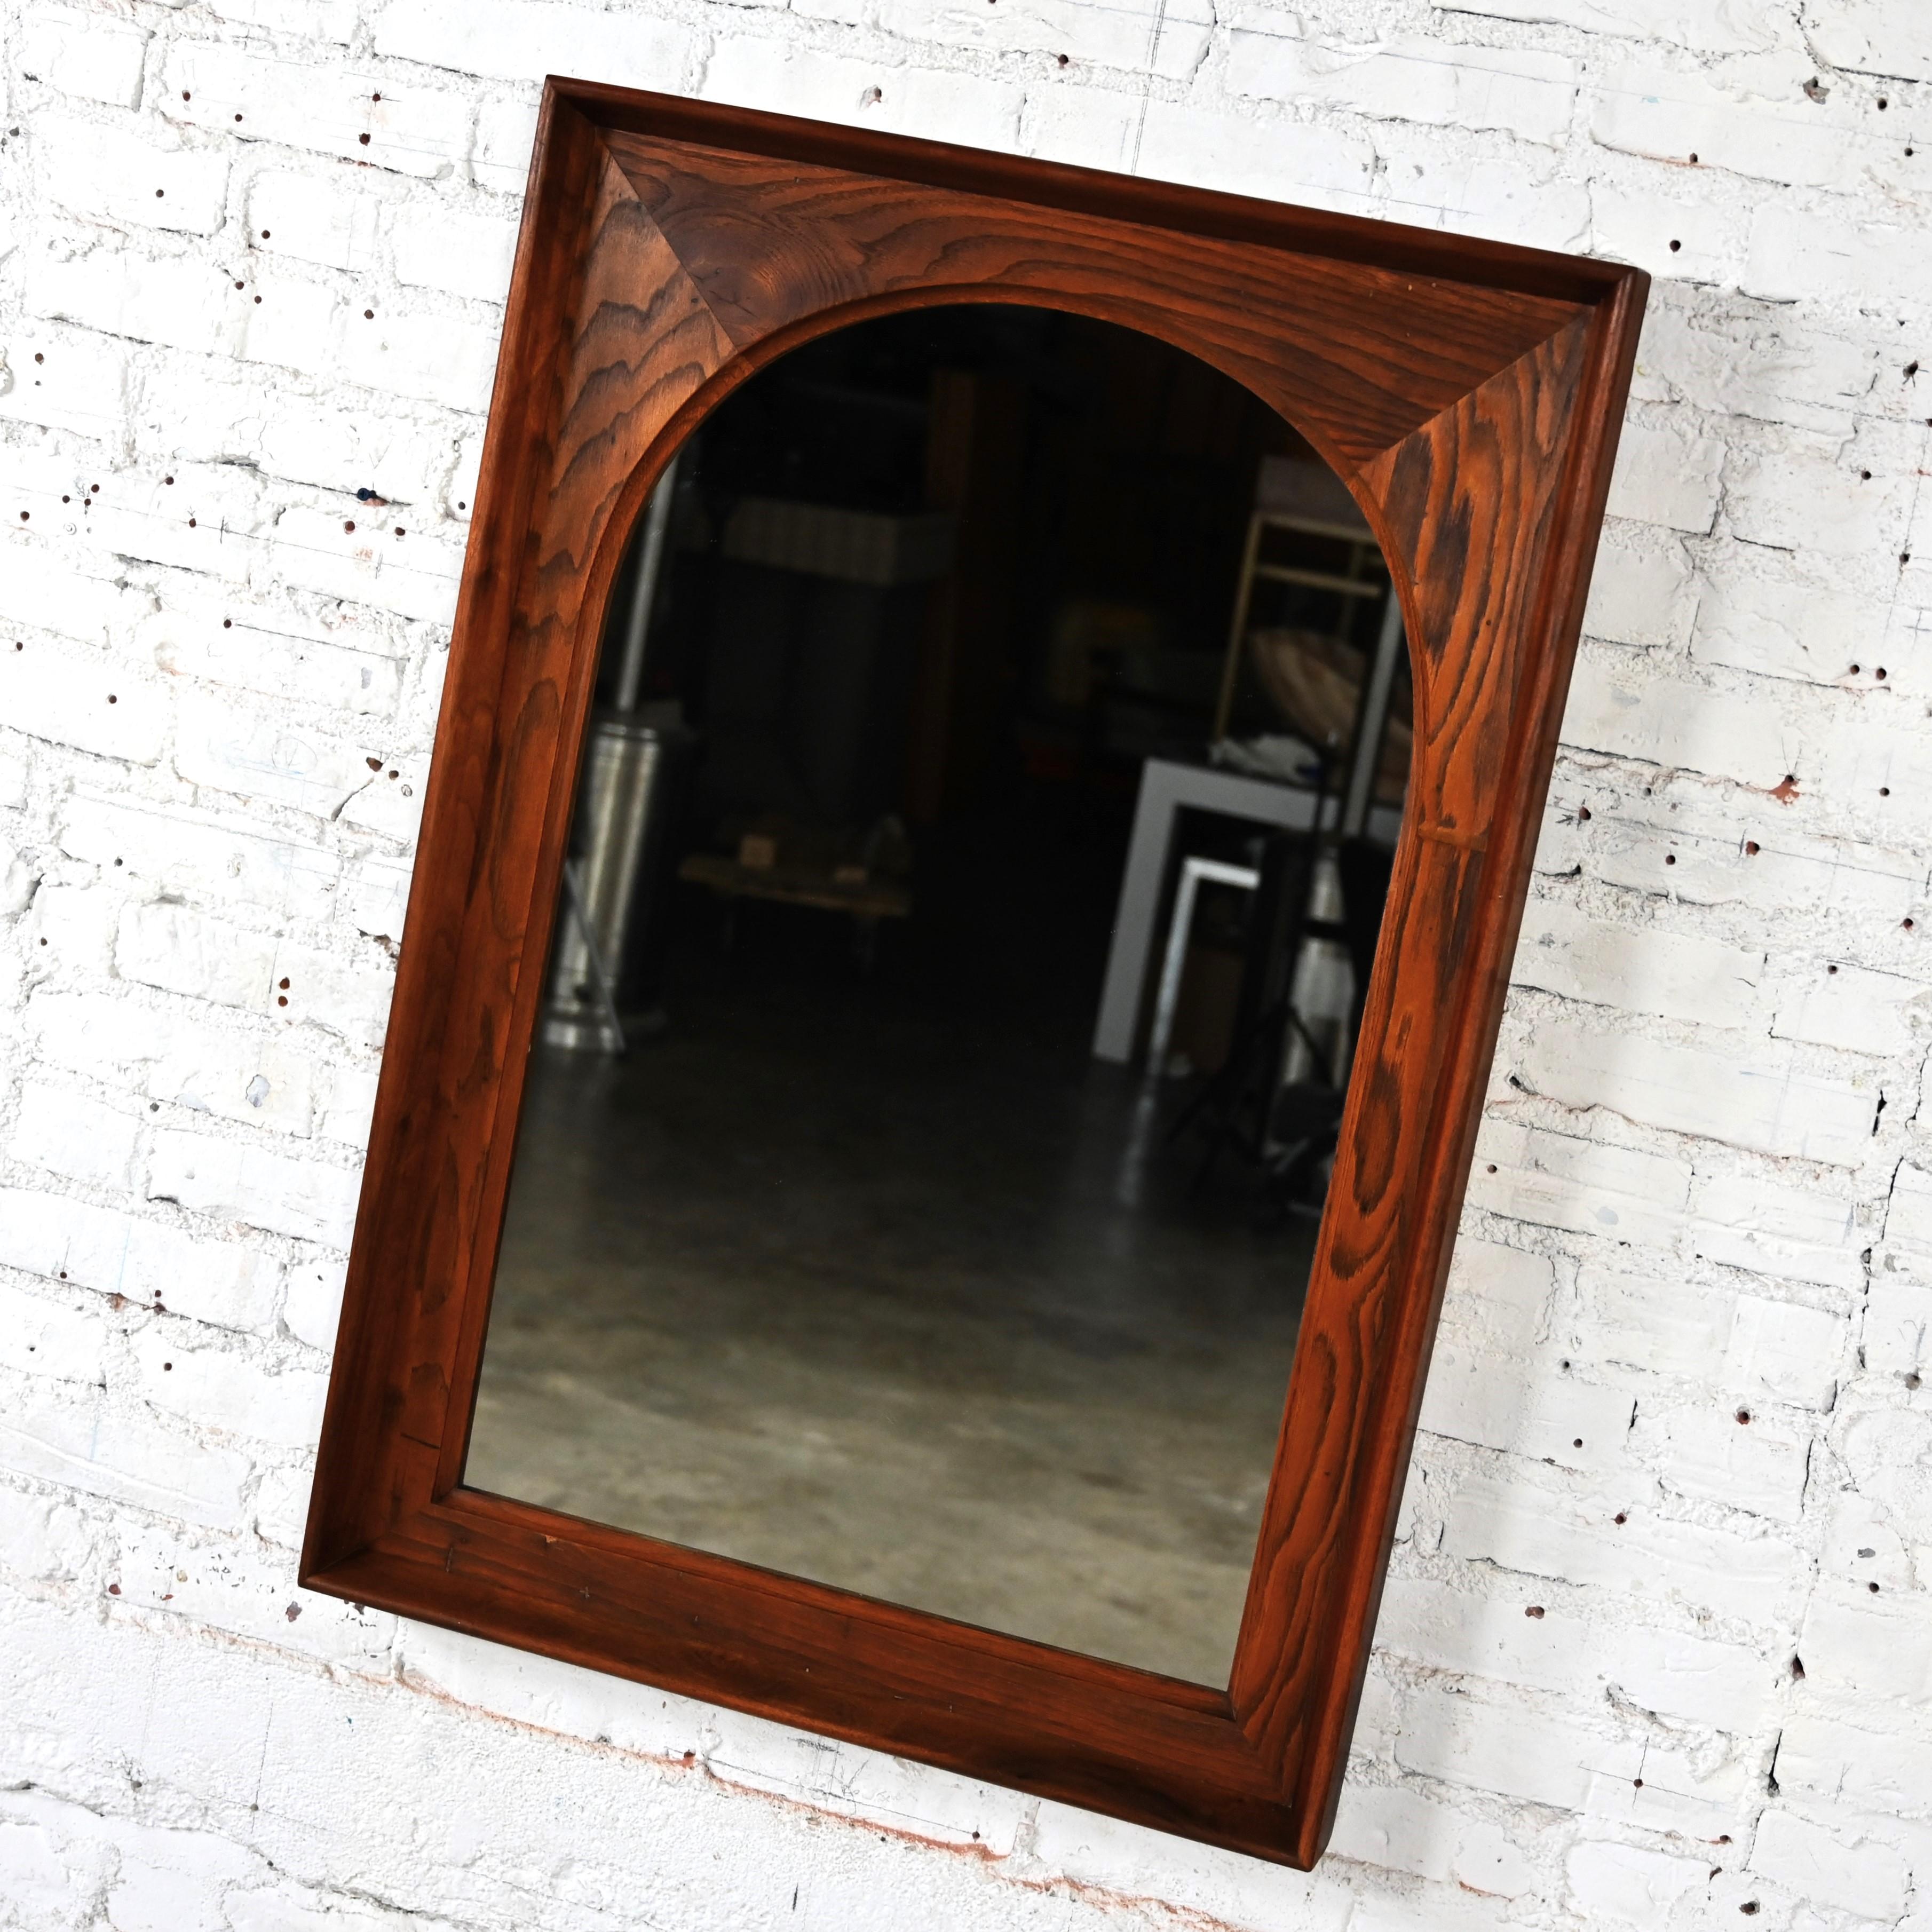 Magnifique miroir à arc encadré de style moderne du milieu du siècle dernier par Dillingham Manufacturing Company. Composé d'un miroir arqué entouré d'un cyprès rustique et d'une garniture en noyer. Byit, en gardant à l'esprit qu'il s'agit d'une